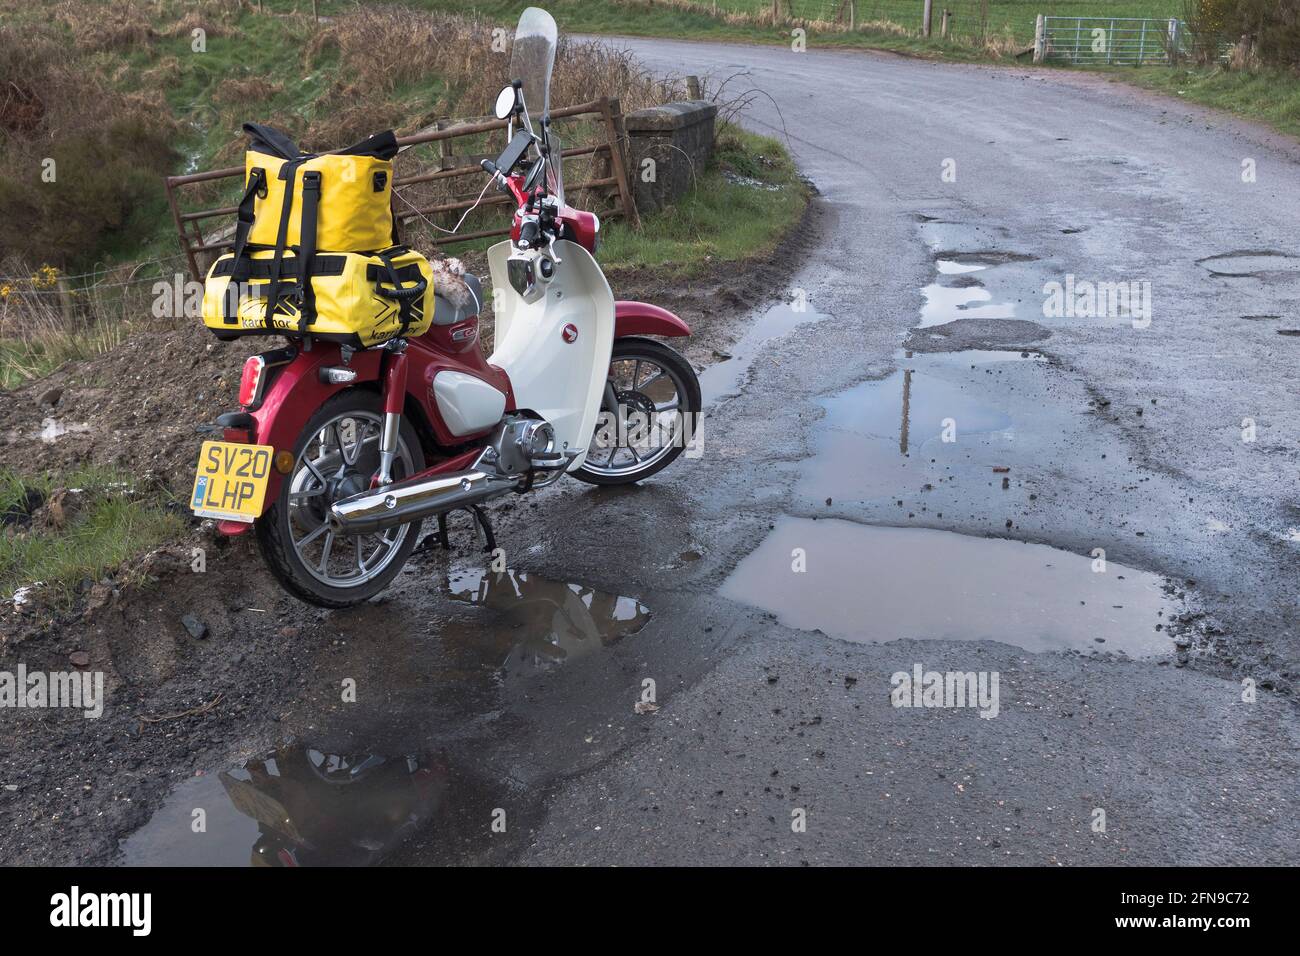 dh Roads SCOZIA UK Pothole moto da buche potholes profondo buco di pozzanghera in superficie stradale danneggiato Covid 19 inverno danni meteo ravvicinato strada scarsa Foto Stock